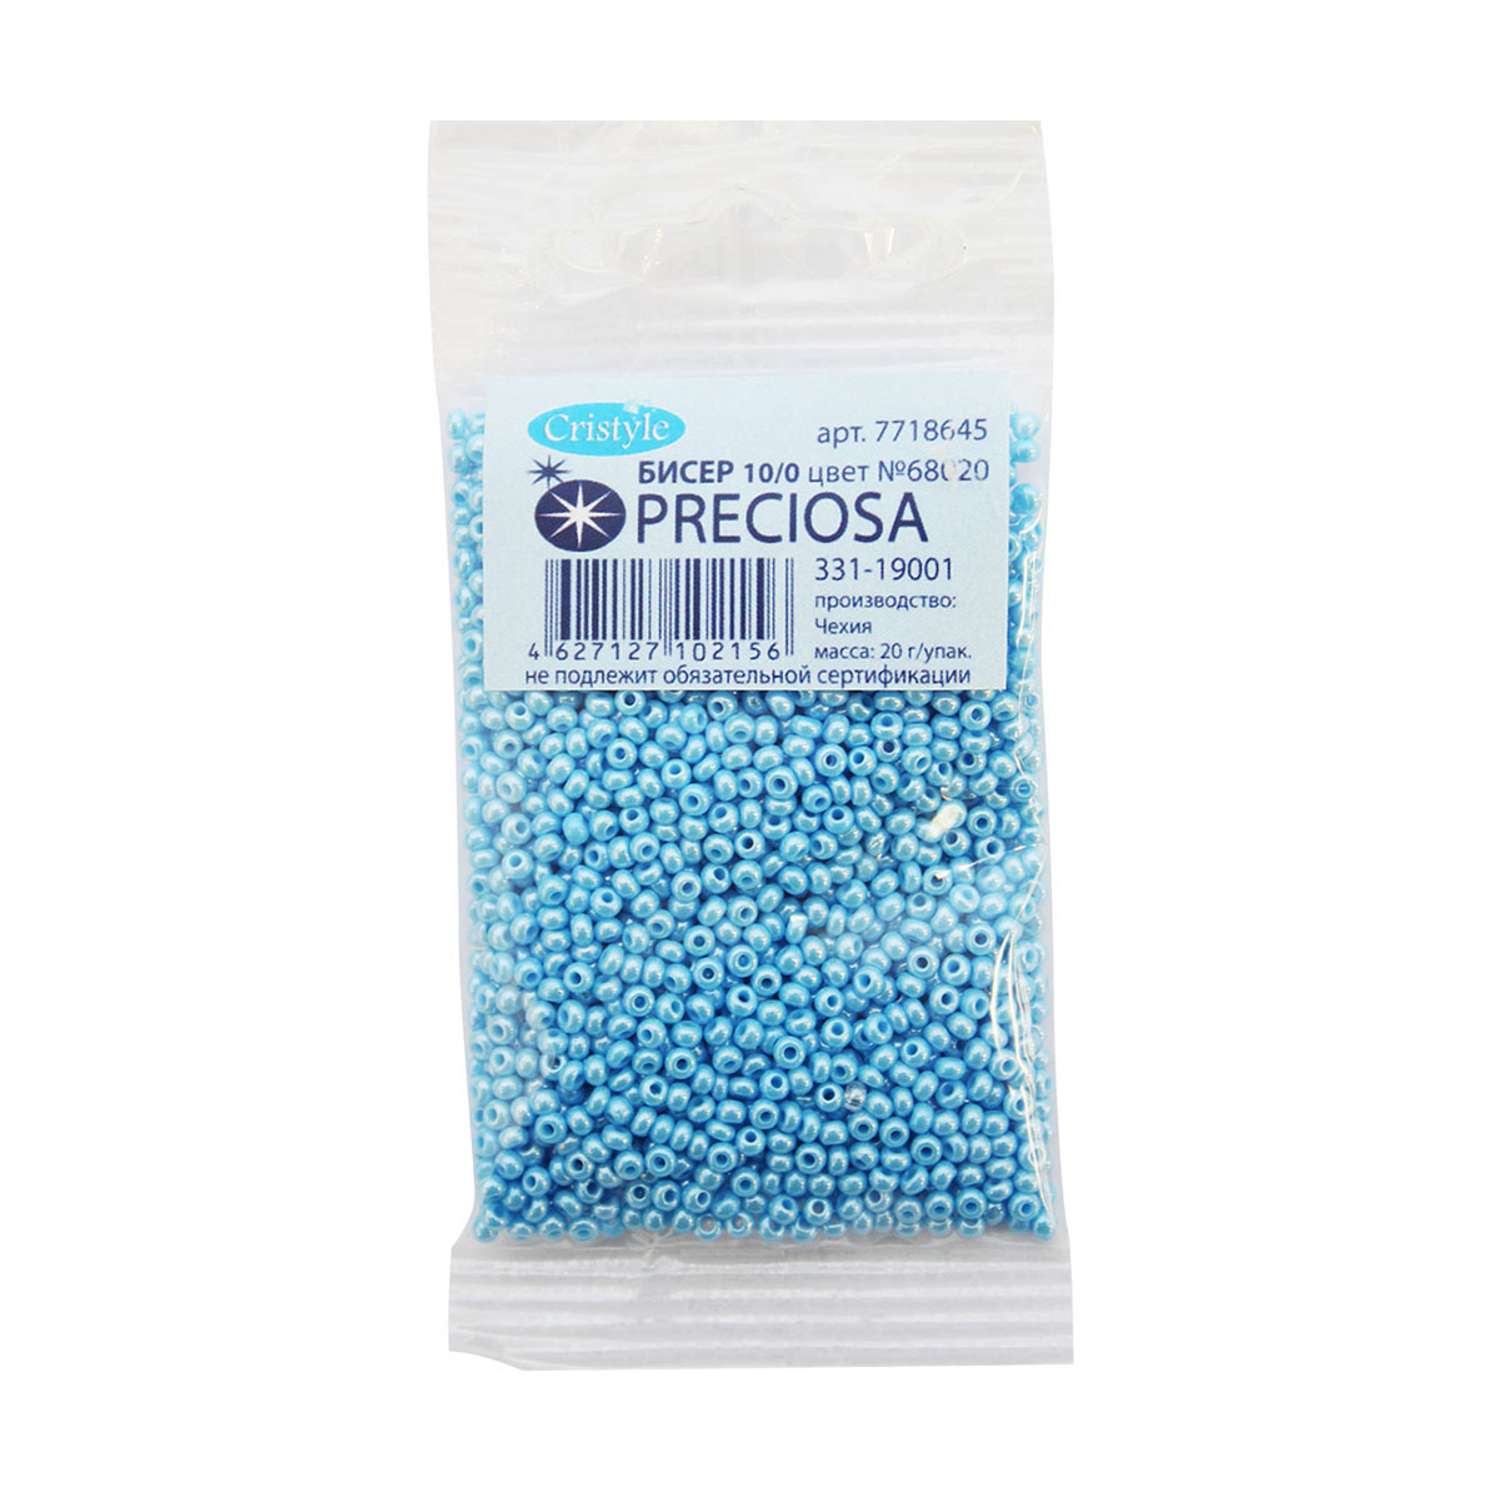 Бисер Preciosa чешский непрозрачный с жемчужным покрытием 10/0 20 гр Прециоза 68020 голубой - фото 3